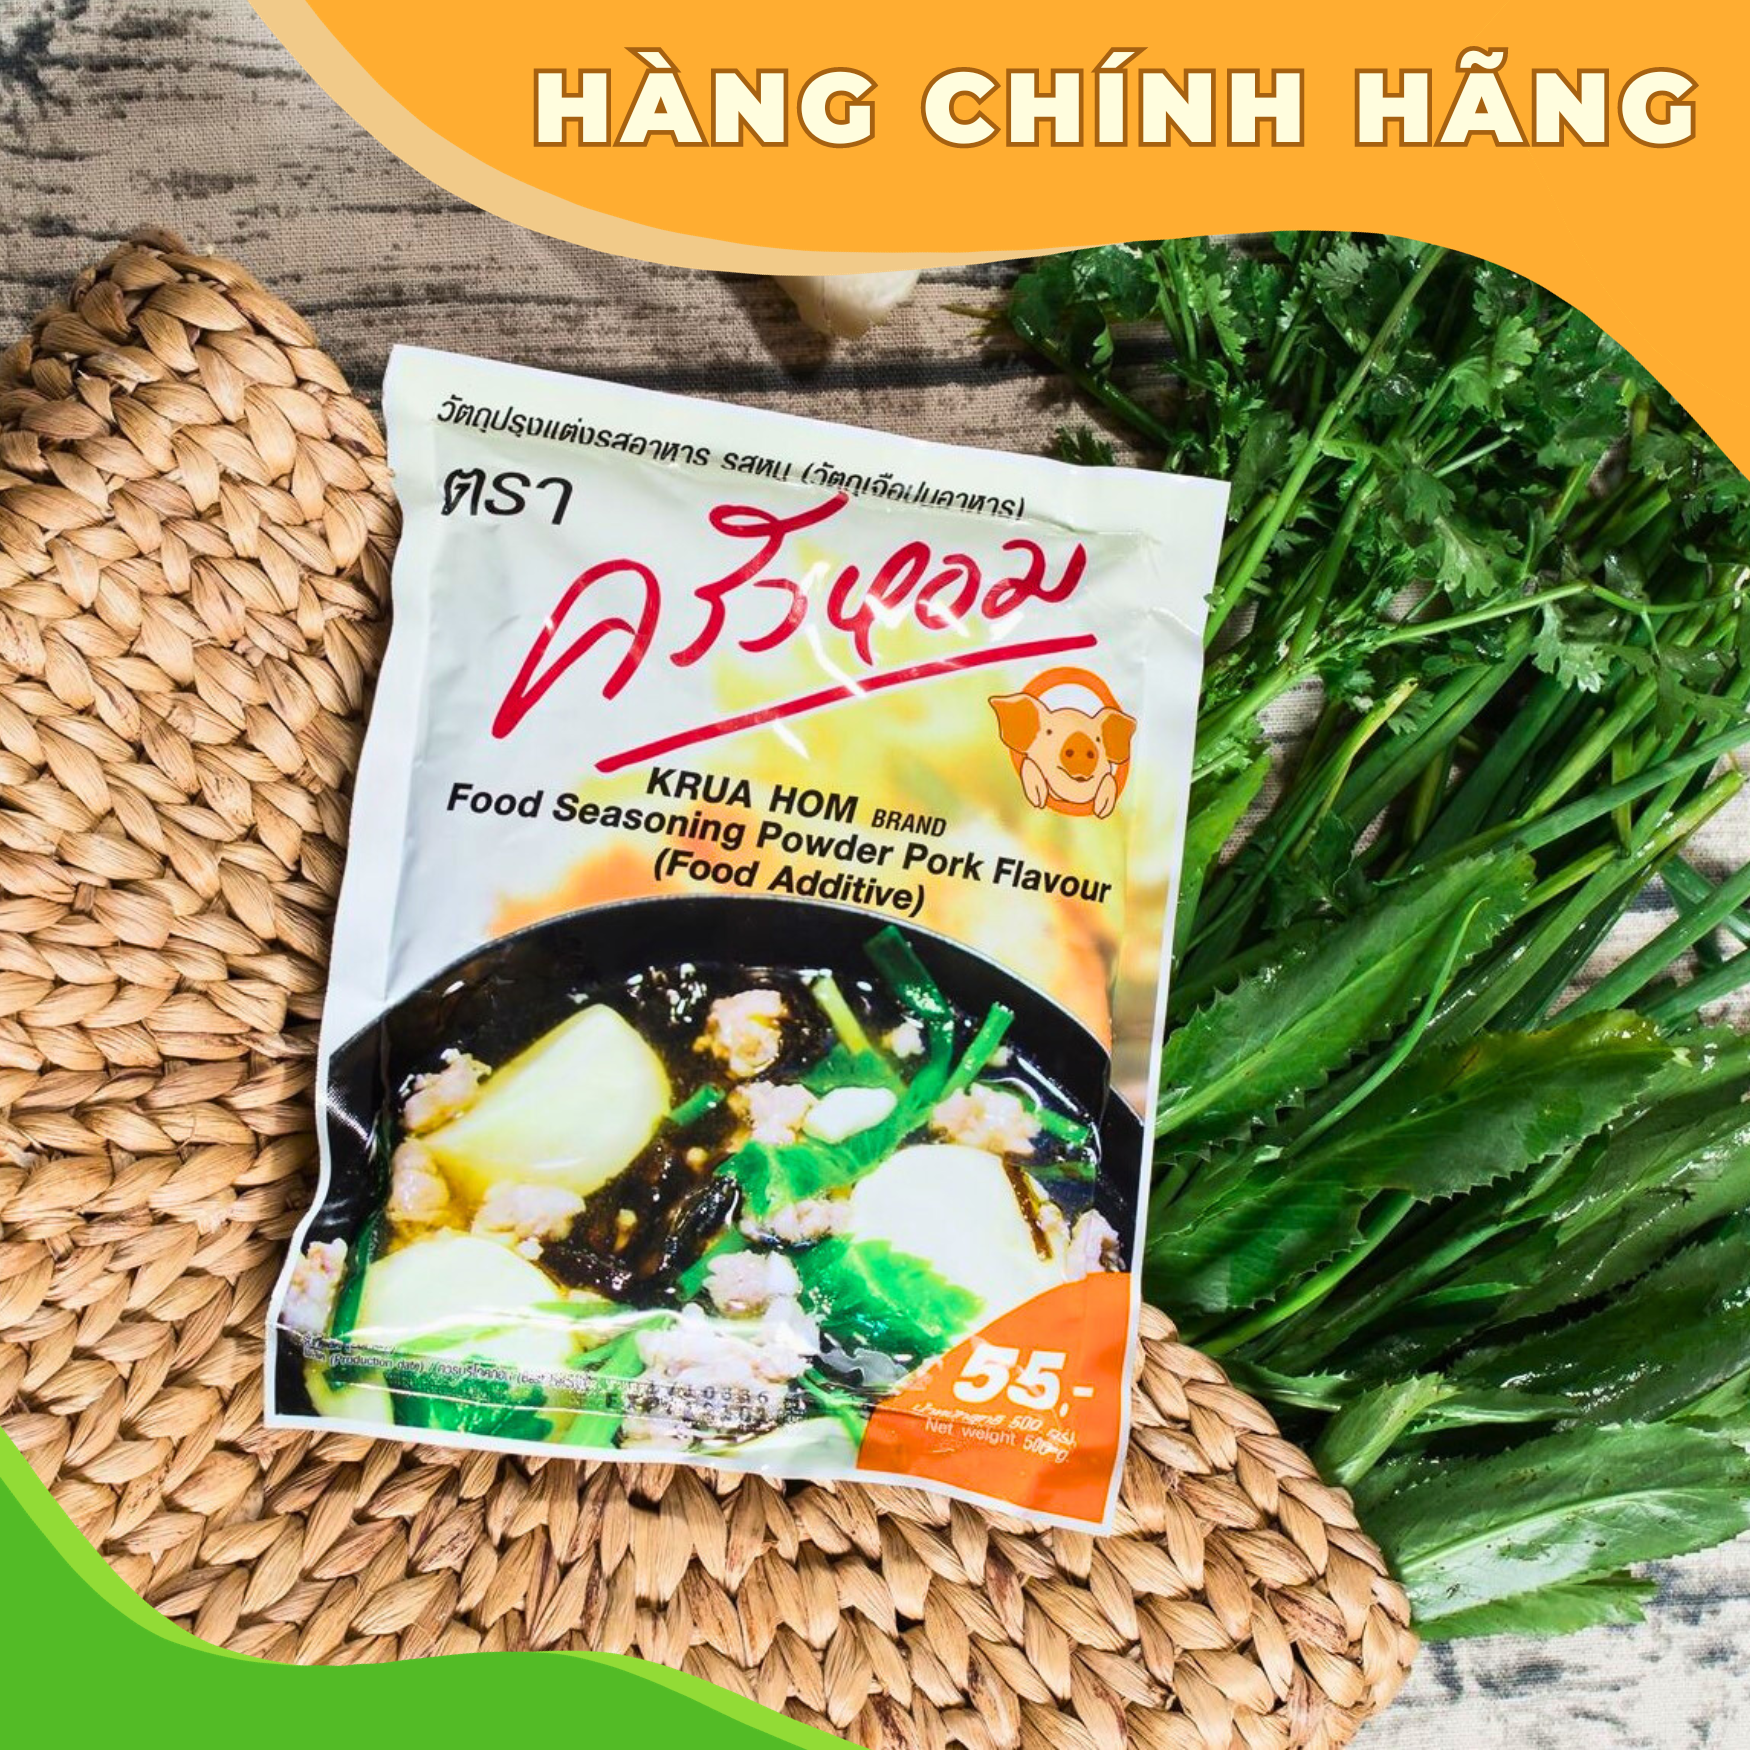 [CHÍNH HÃNG] Bột Nêm Krua Hom Hương Thịt Heo [ Chiết Xuất Nấm Men ] - Nhập Khẩu Từ Thái Lan - Gói 500g